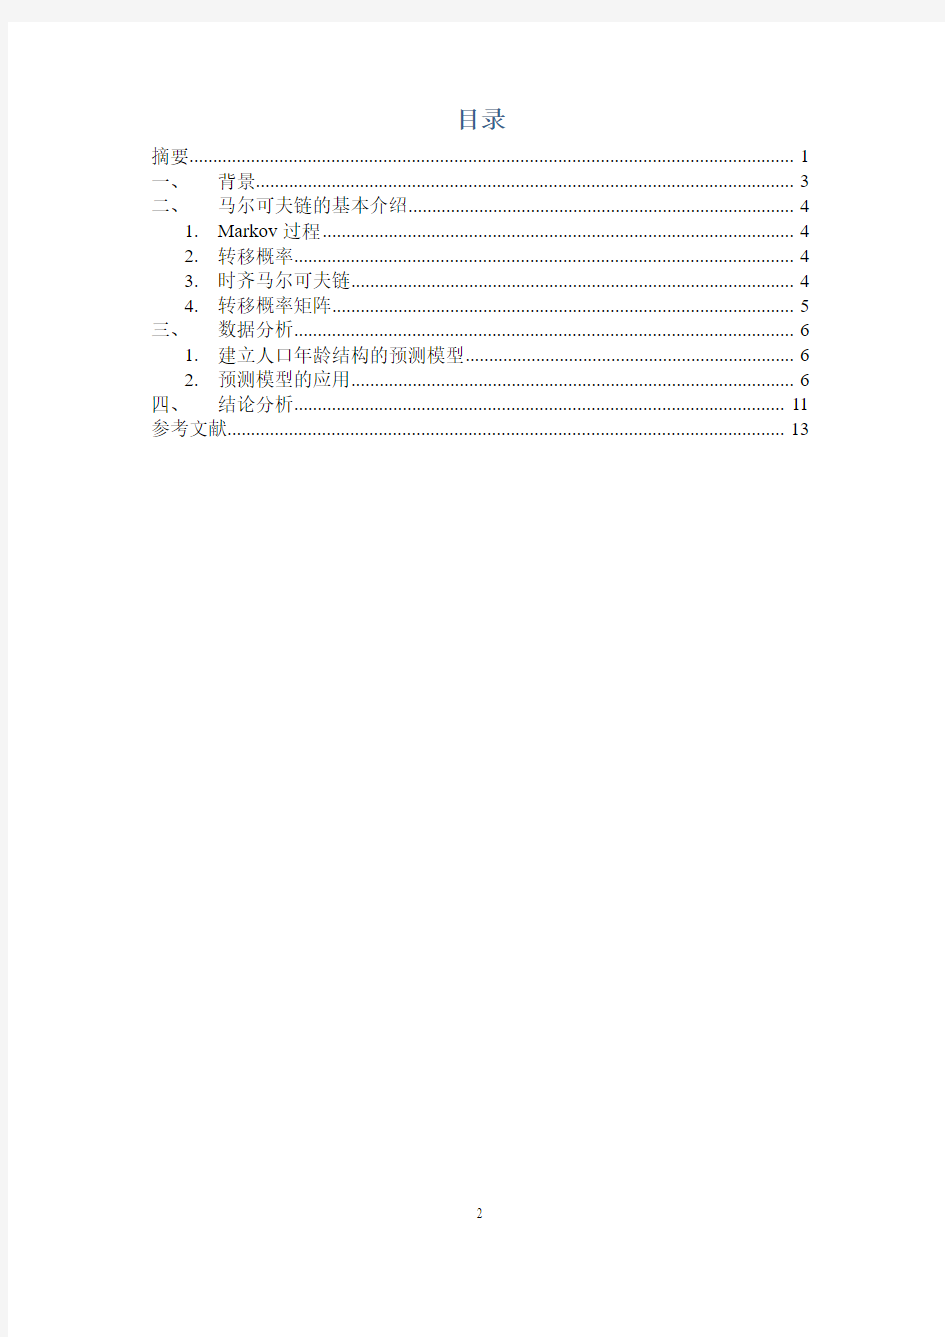 Markov链在中国人口年龄结构预测中的应用